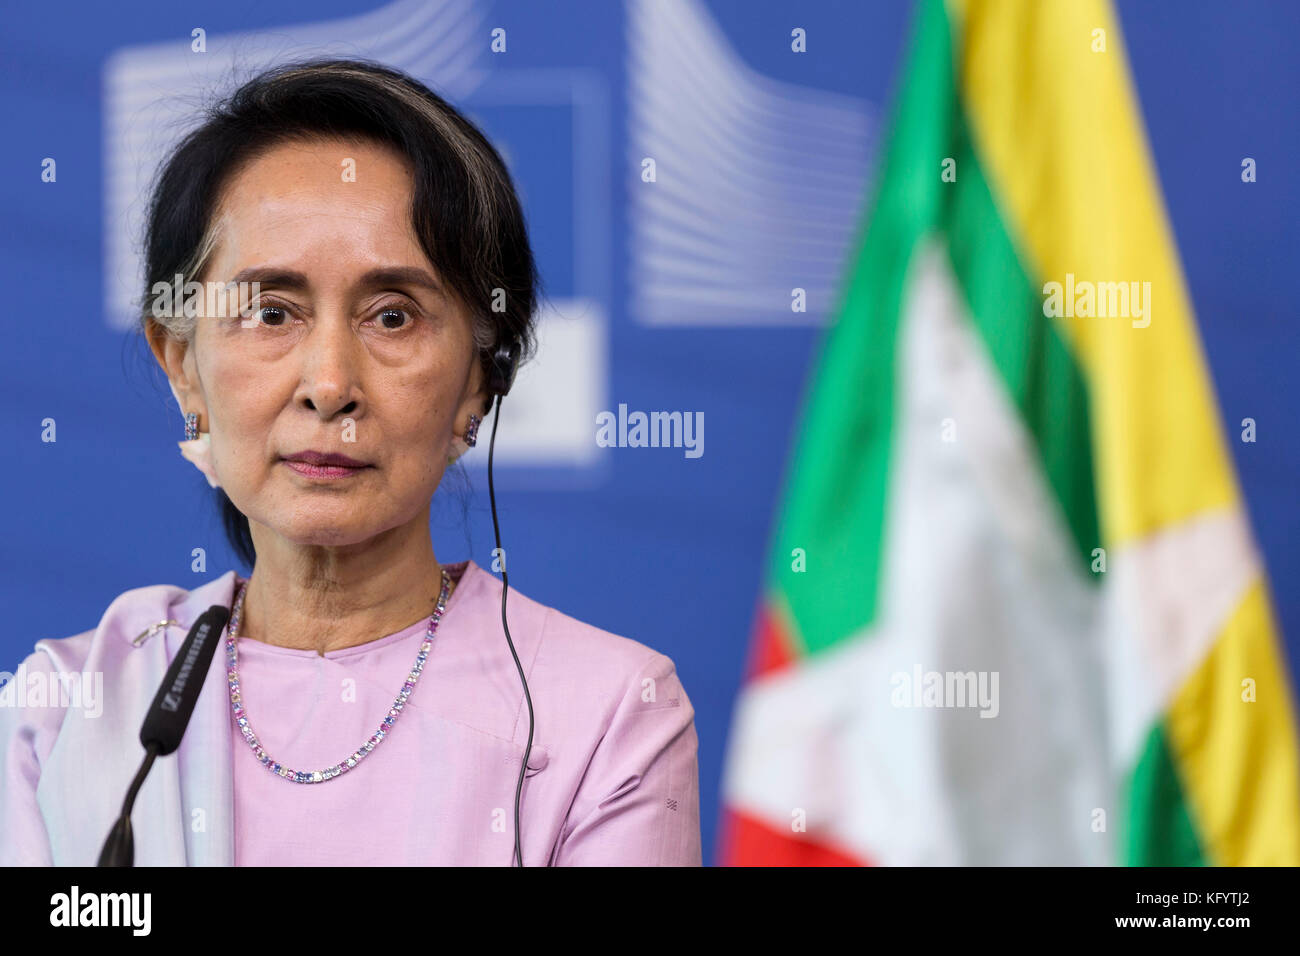 Belgique, Bruxelles, sur 2017 0502 : Aung San Suu Kyi, Ministre des Affaires étrangères birman, Prix Nobel de la paix 1991, visite officielle à l'Union européenne Banque D'Images